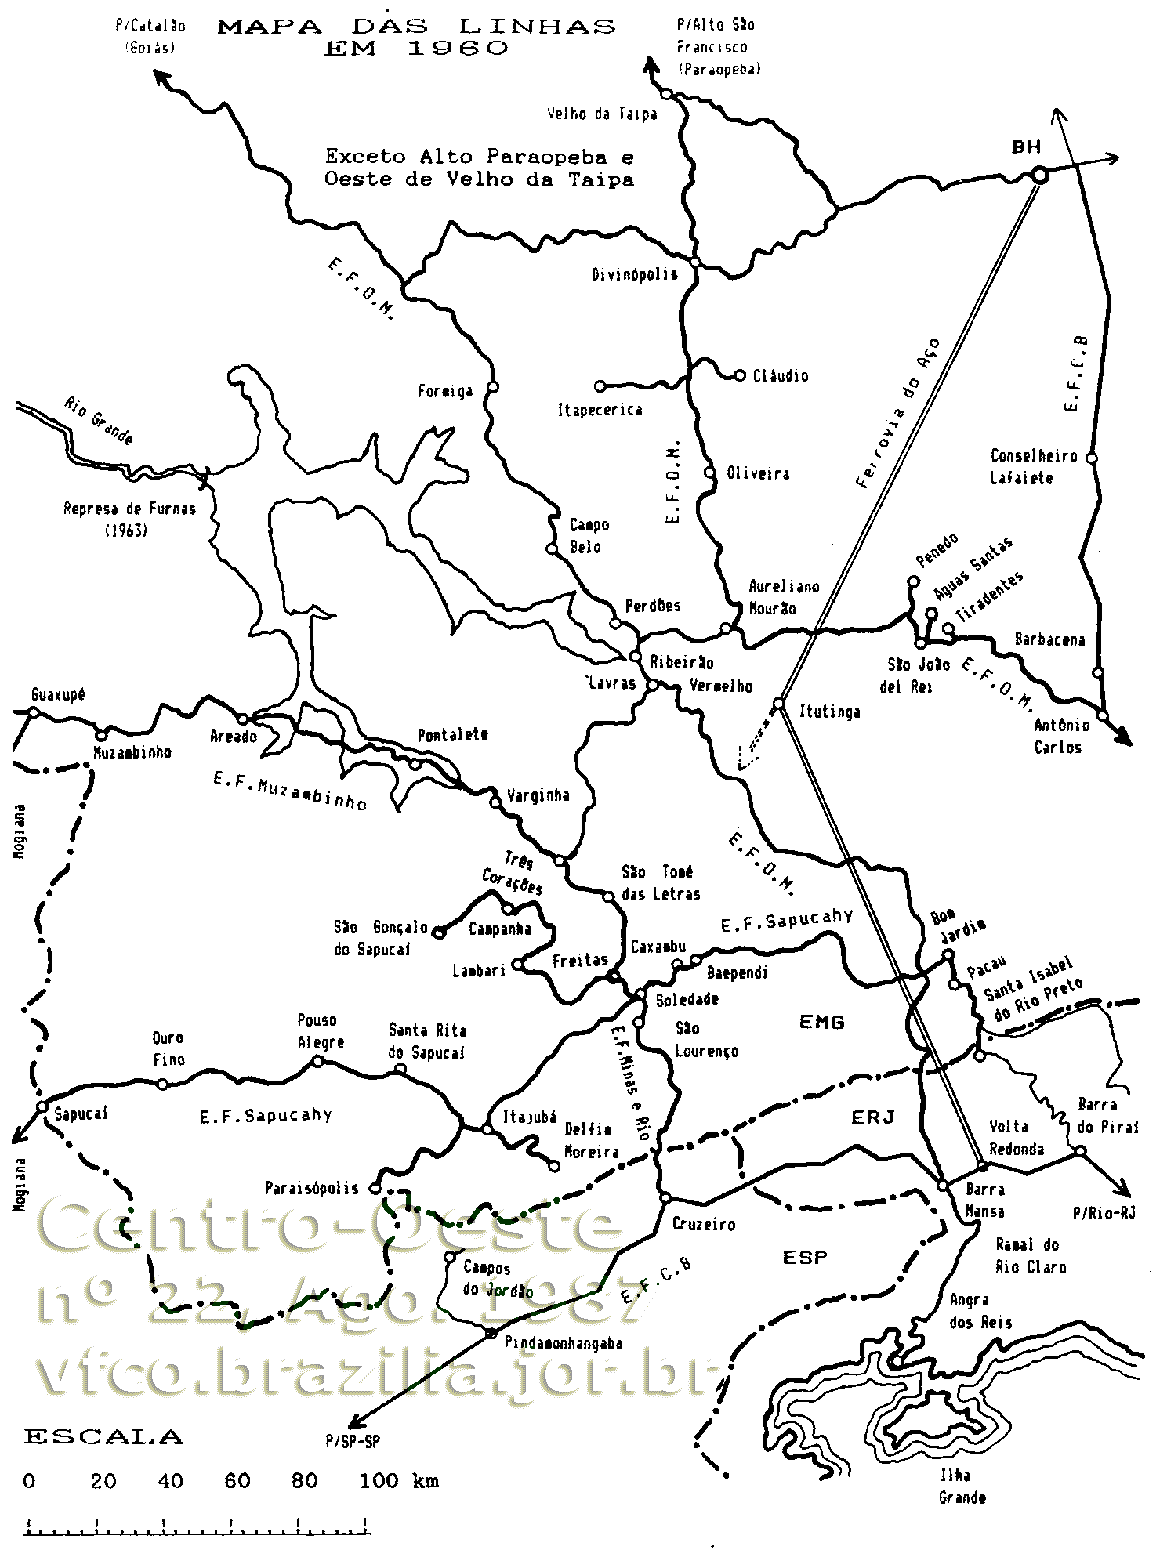 Mapa ferroviário (parcial) dos trilhos da Rede Mineira de Viação (RMV) por volta de 1960